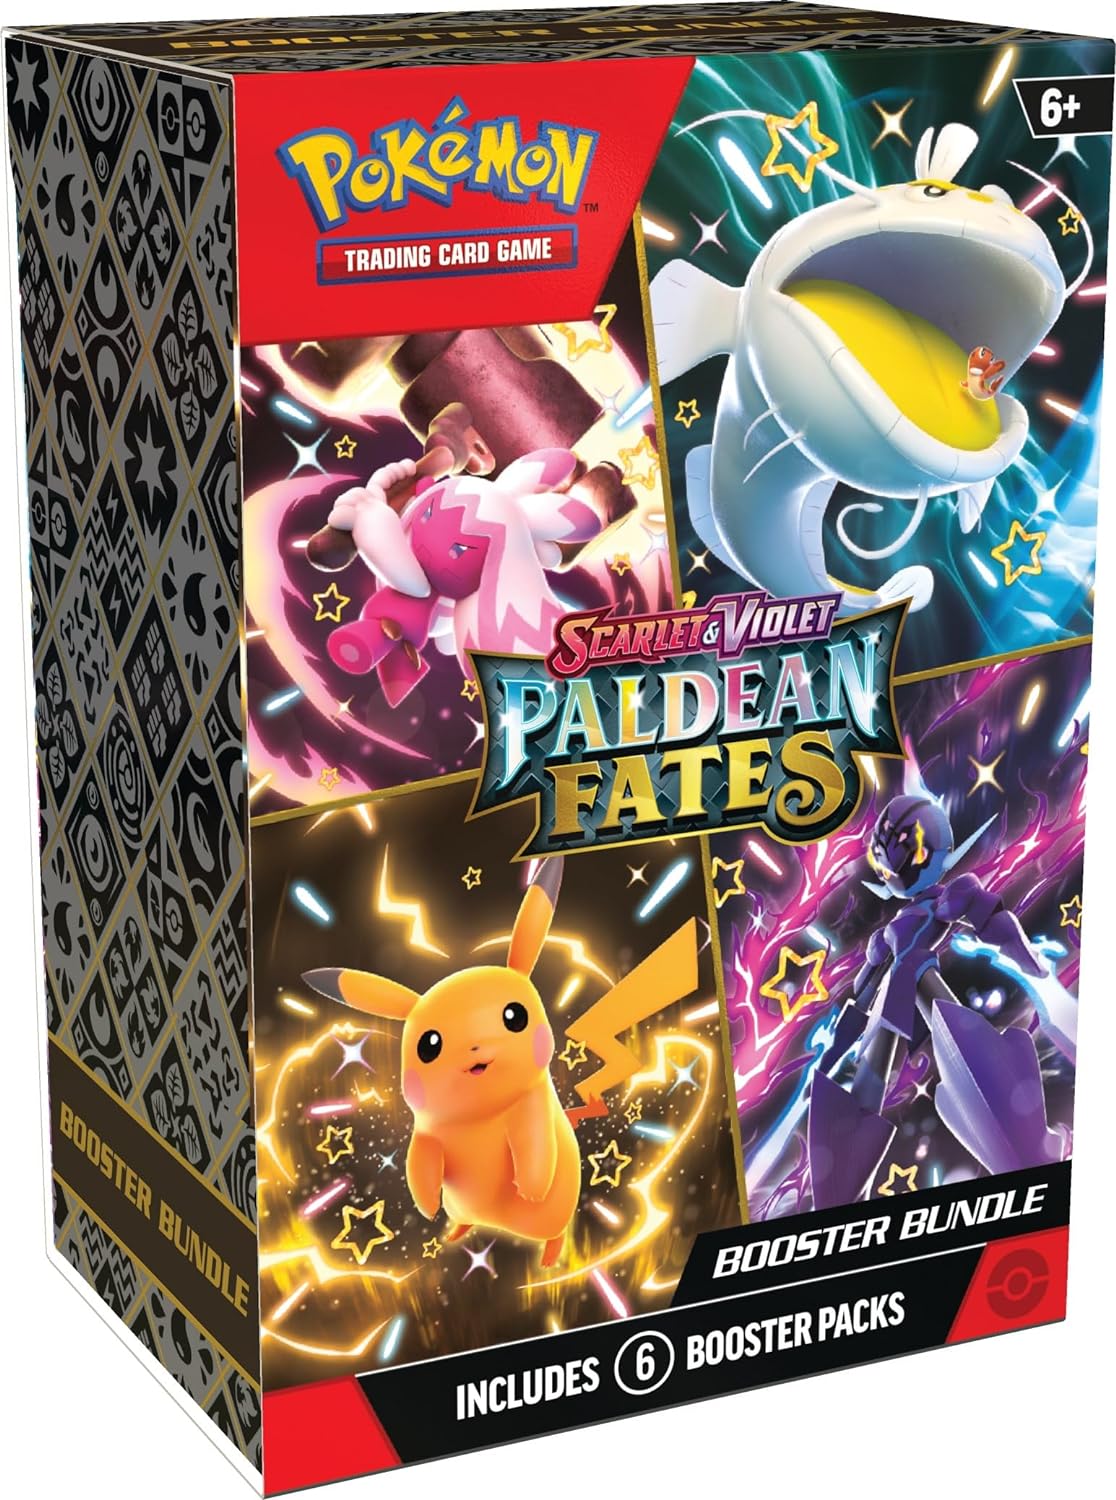 Pokemon - Paldeas Schicksale - Boosterbundle (6 Boosterpacks) - Deutsch